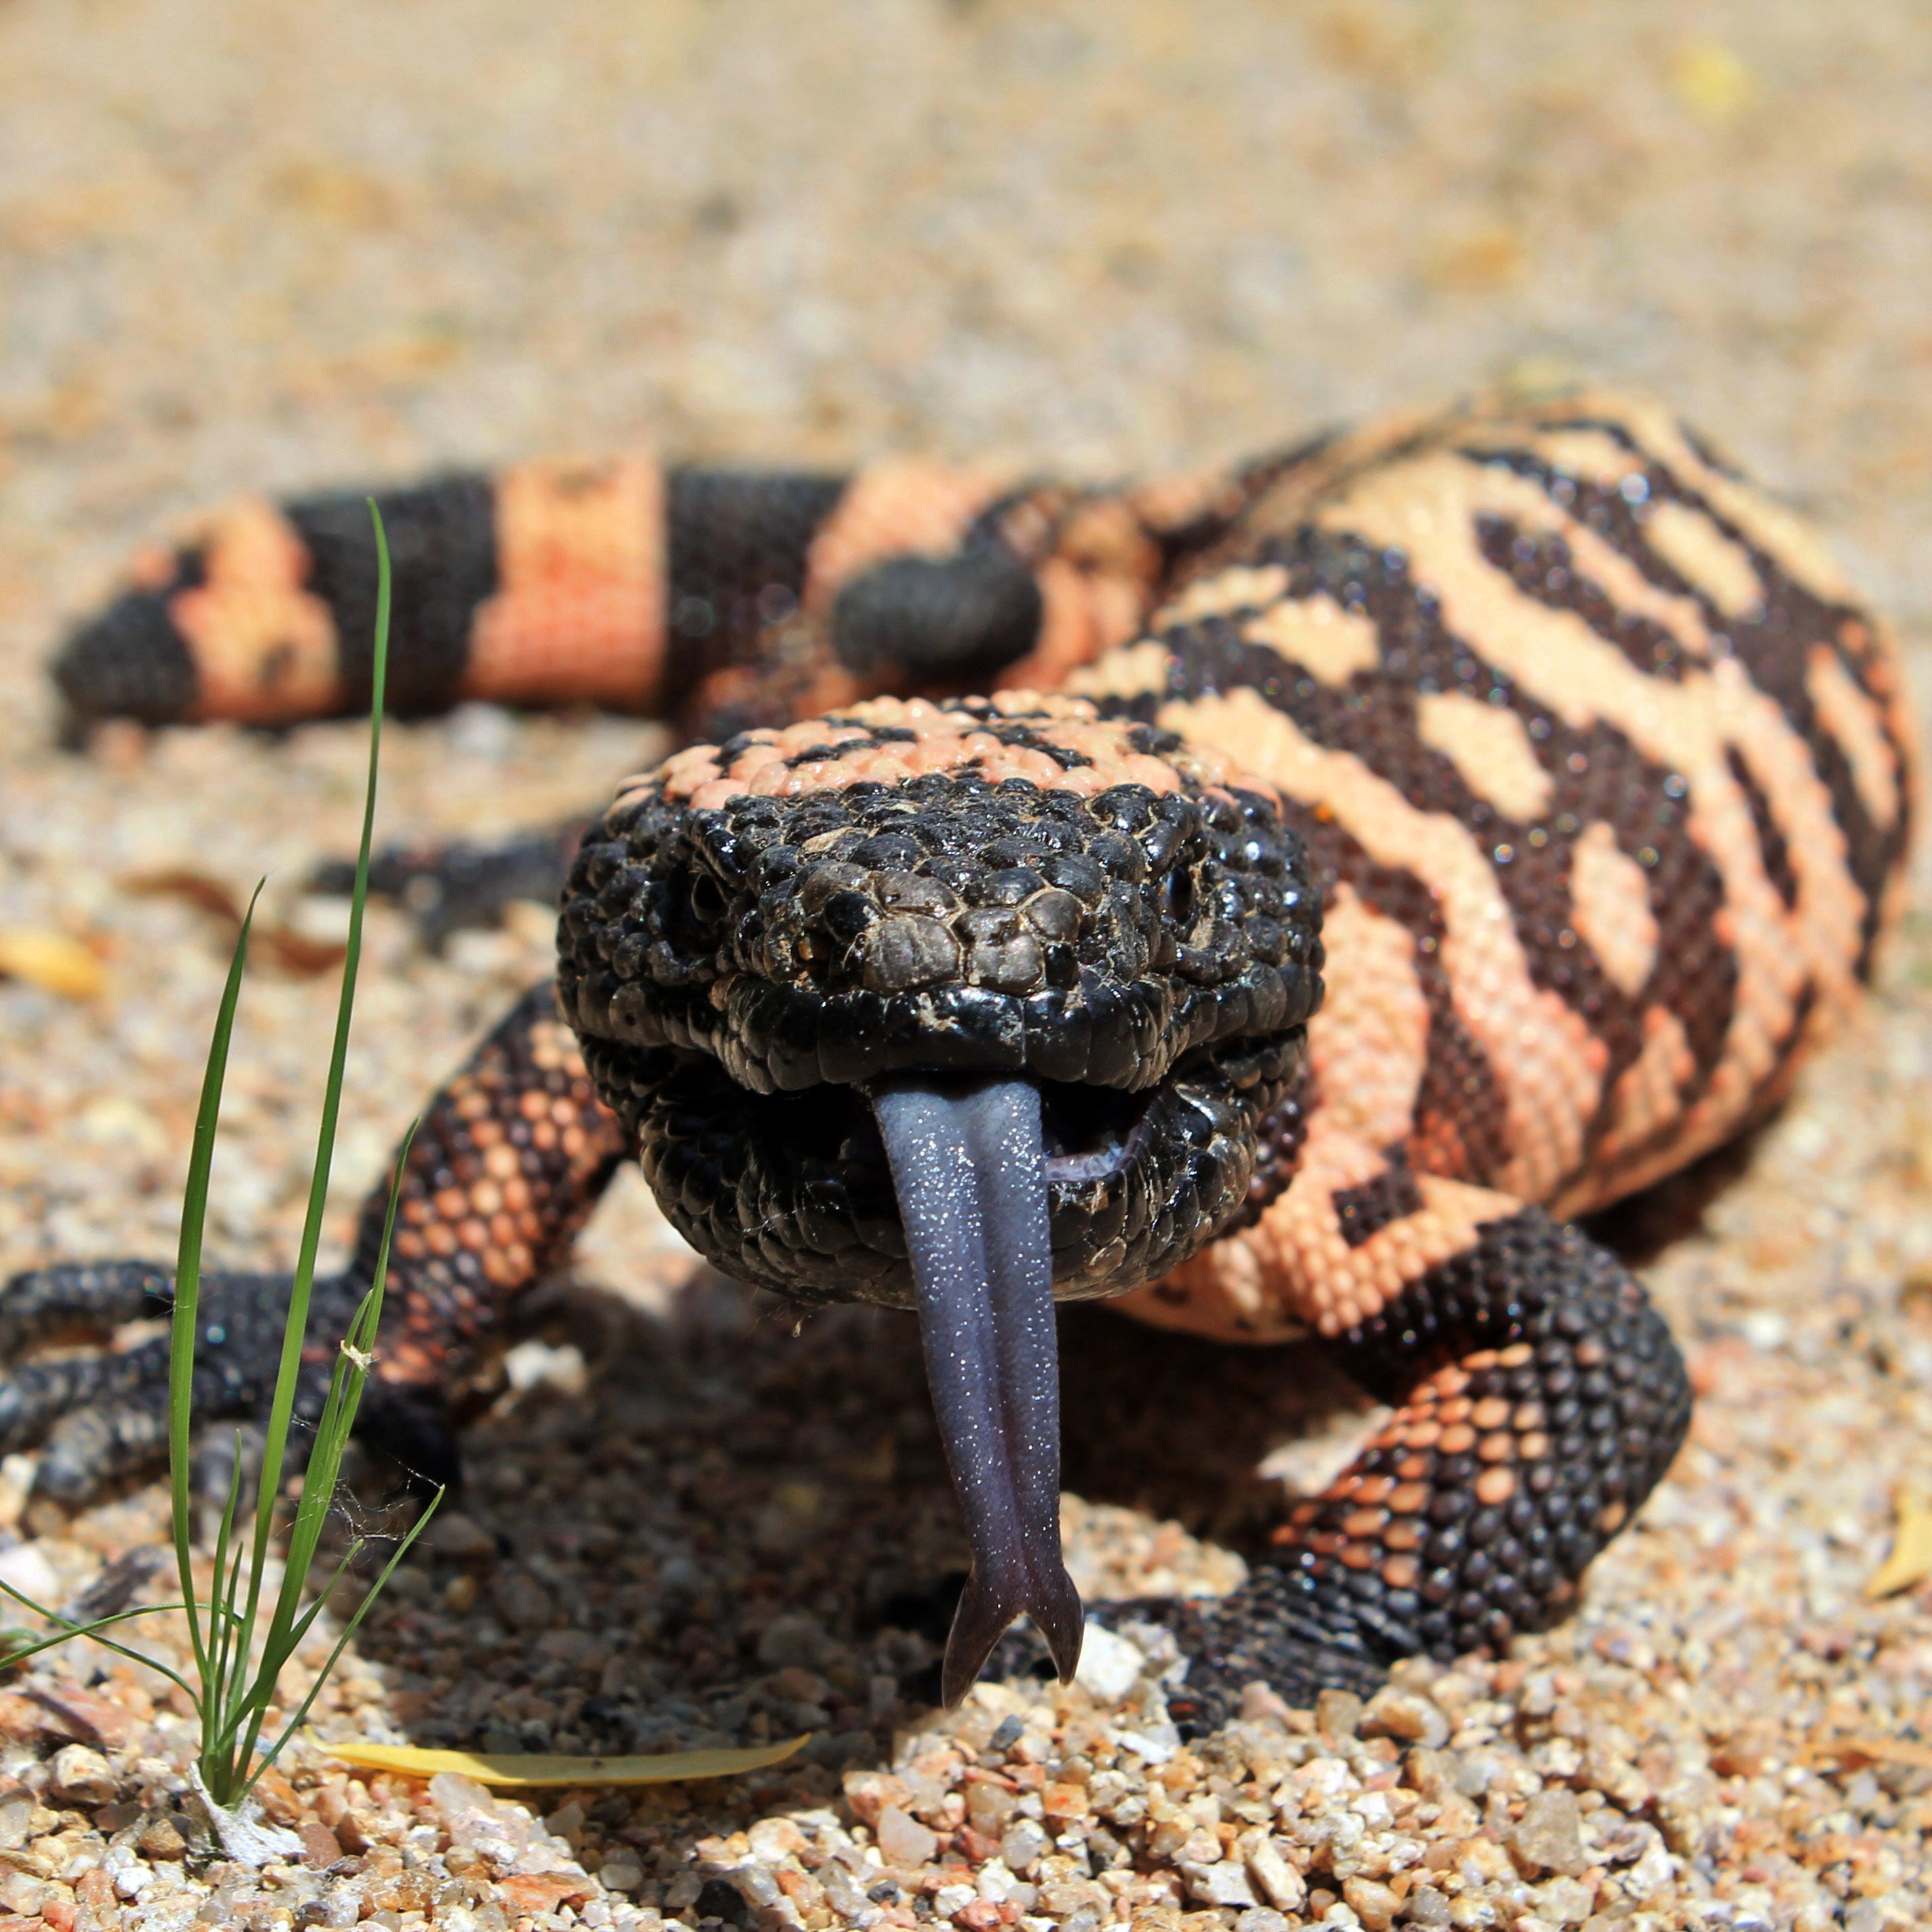 Common AZ reptiles: Gila monsters, rattlesnakes, lizards, tortoises